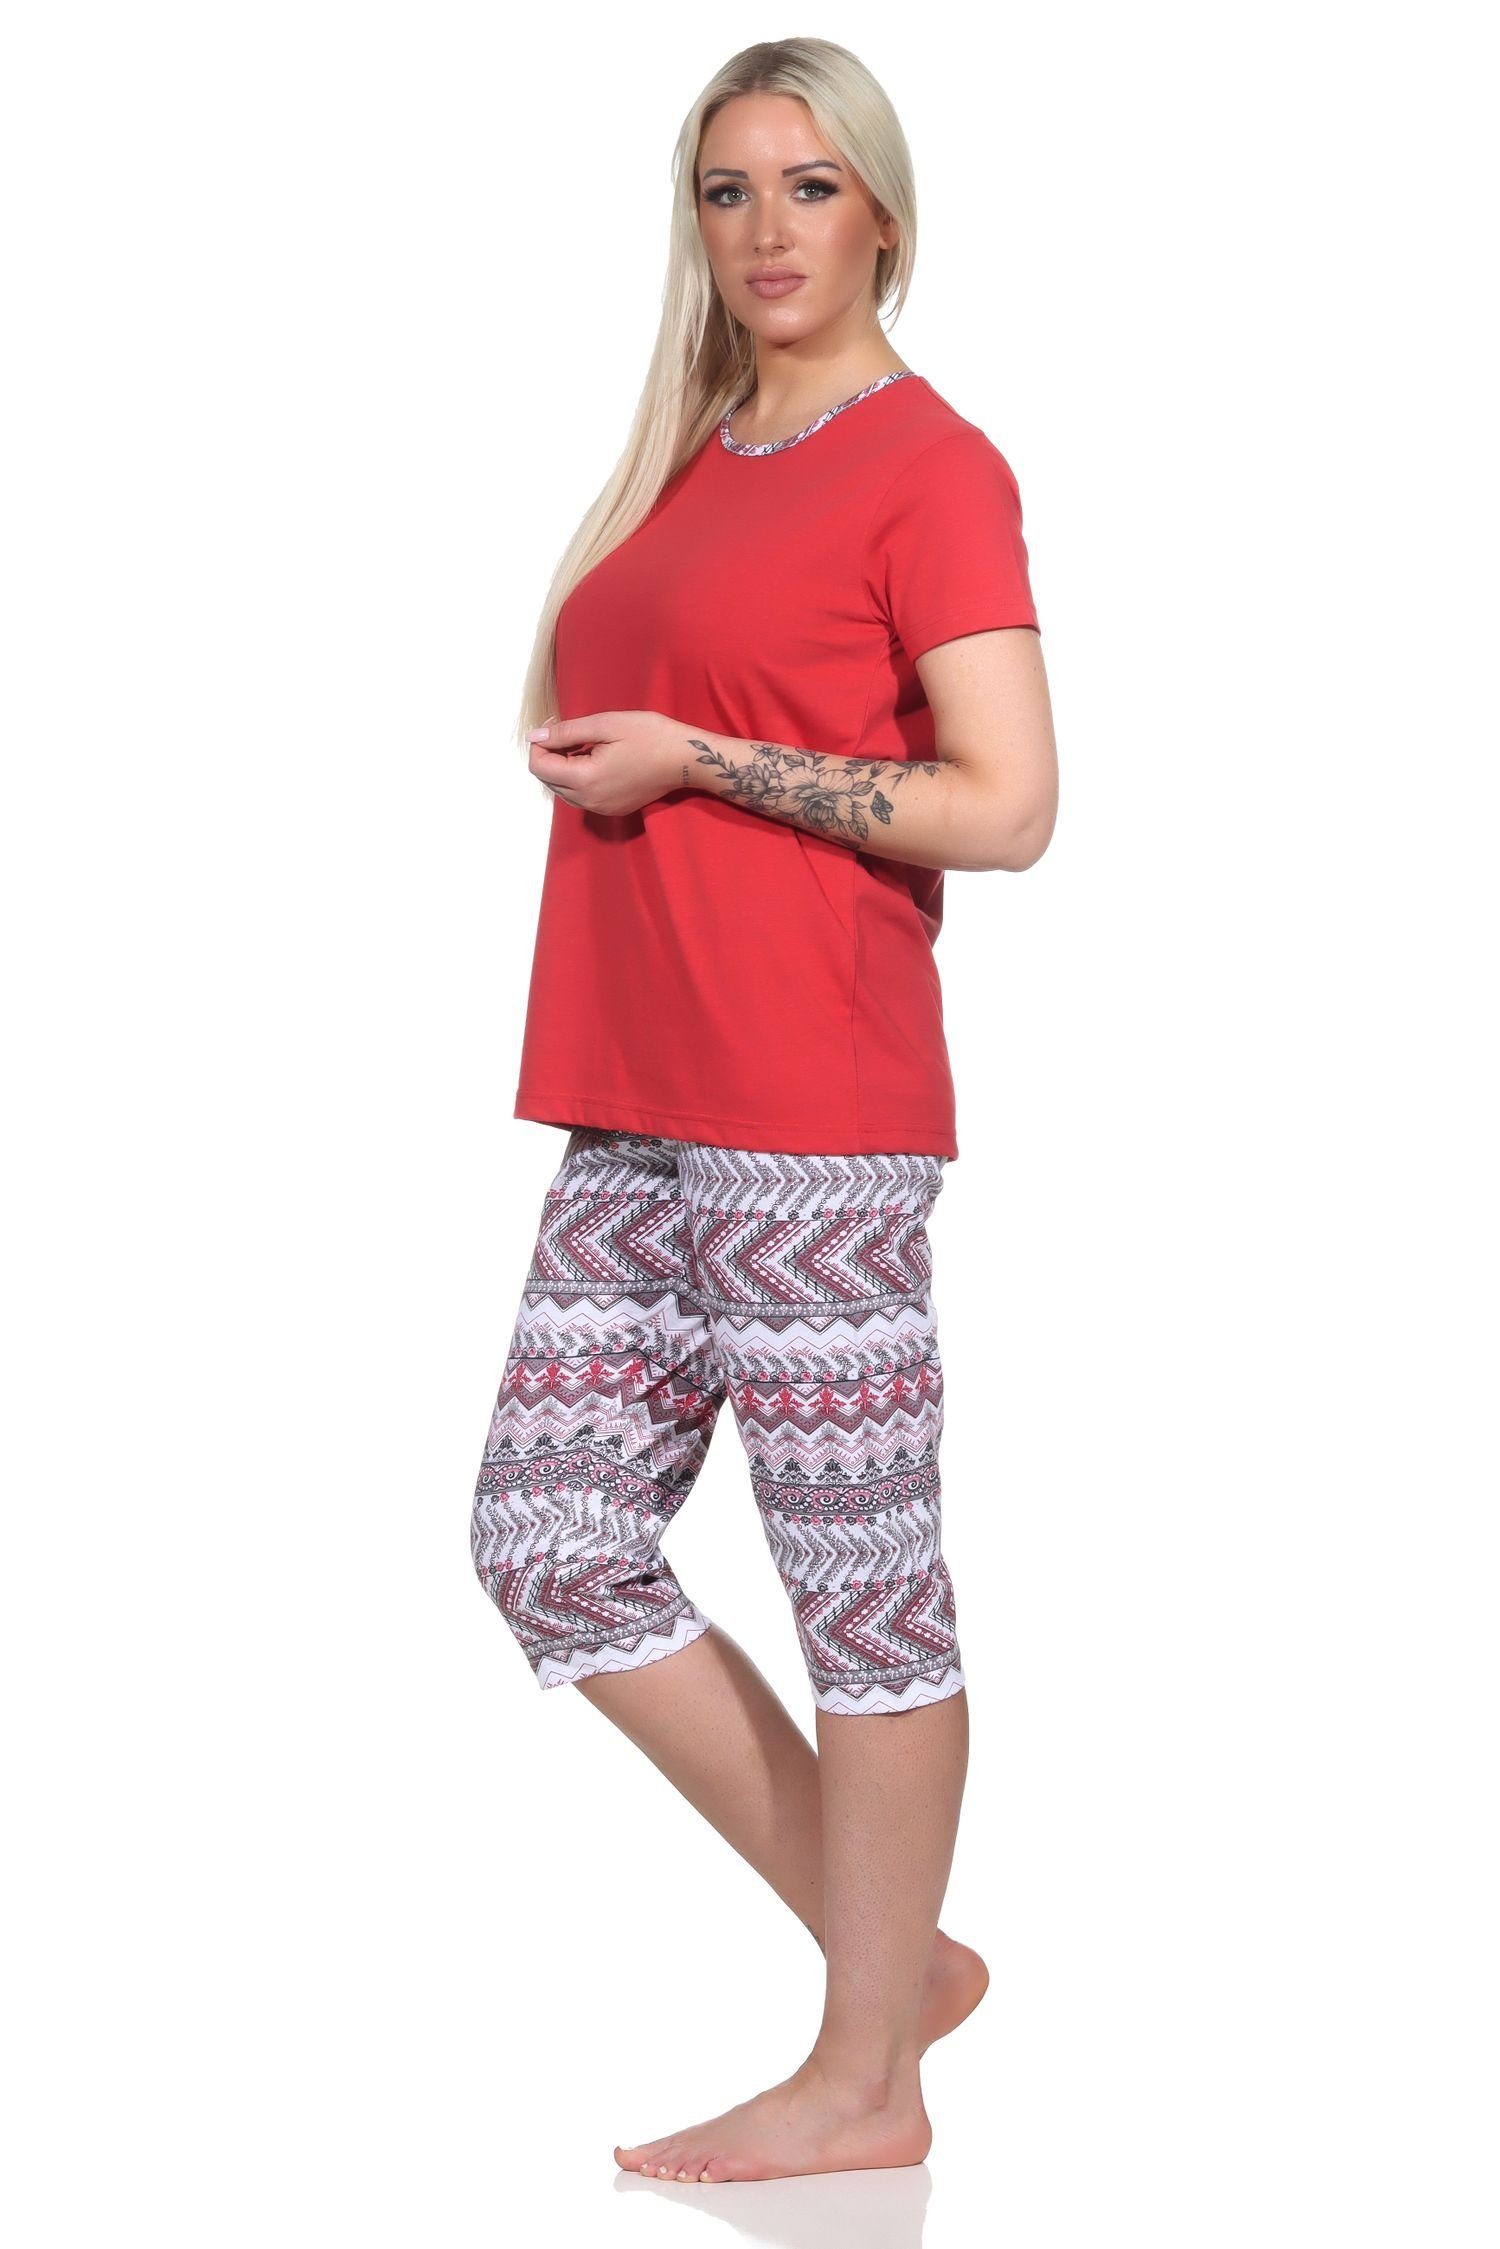 Pyjama Caprihose Normann im Schlafanzug mit Damen Ethnolook rot kurzarm